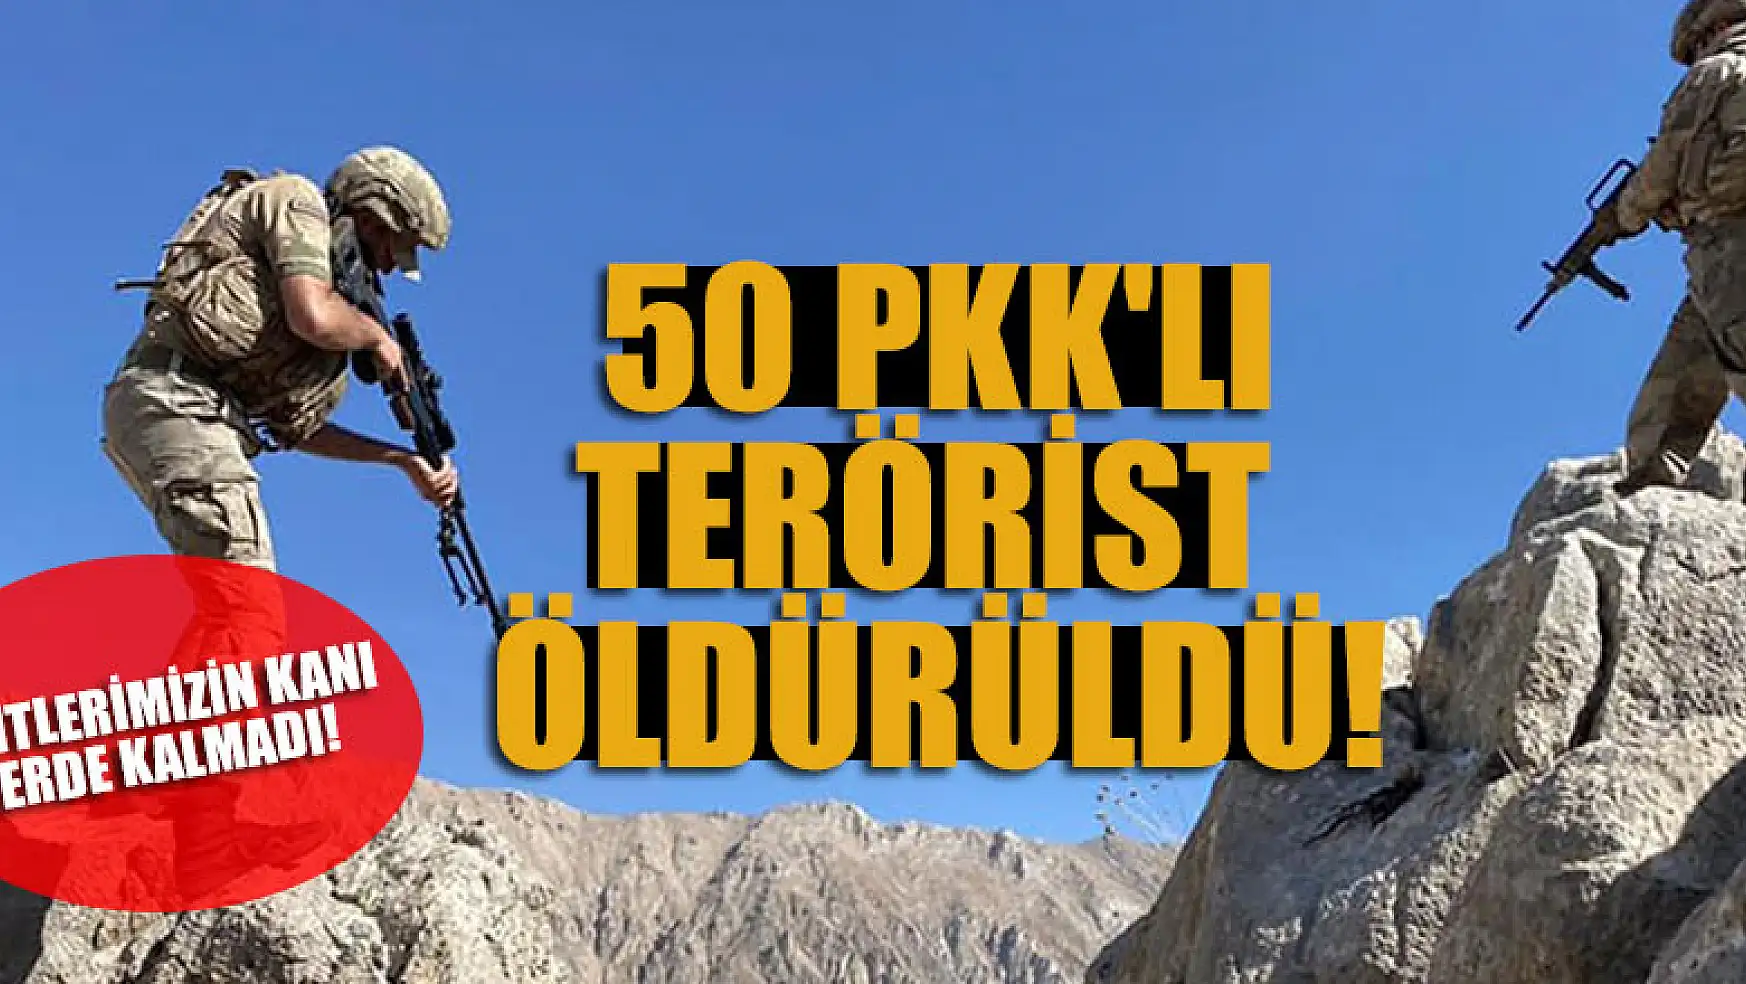 Şehitlerimizin kanı yerde kalmadı! 50 PKK'lı terörist öldürüldü!